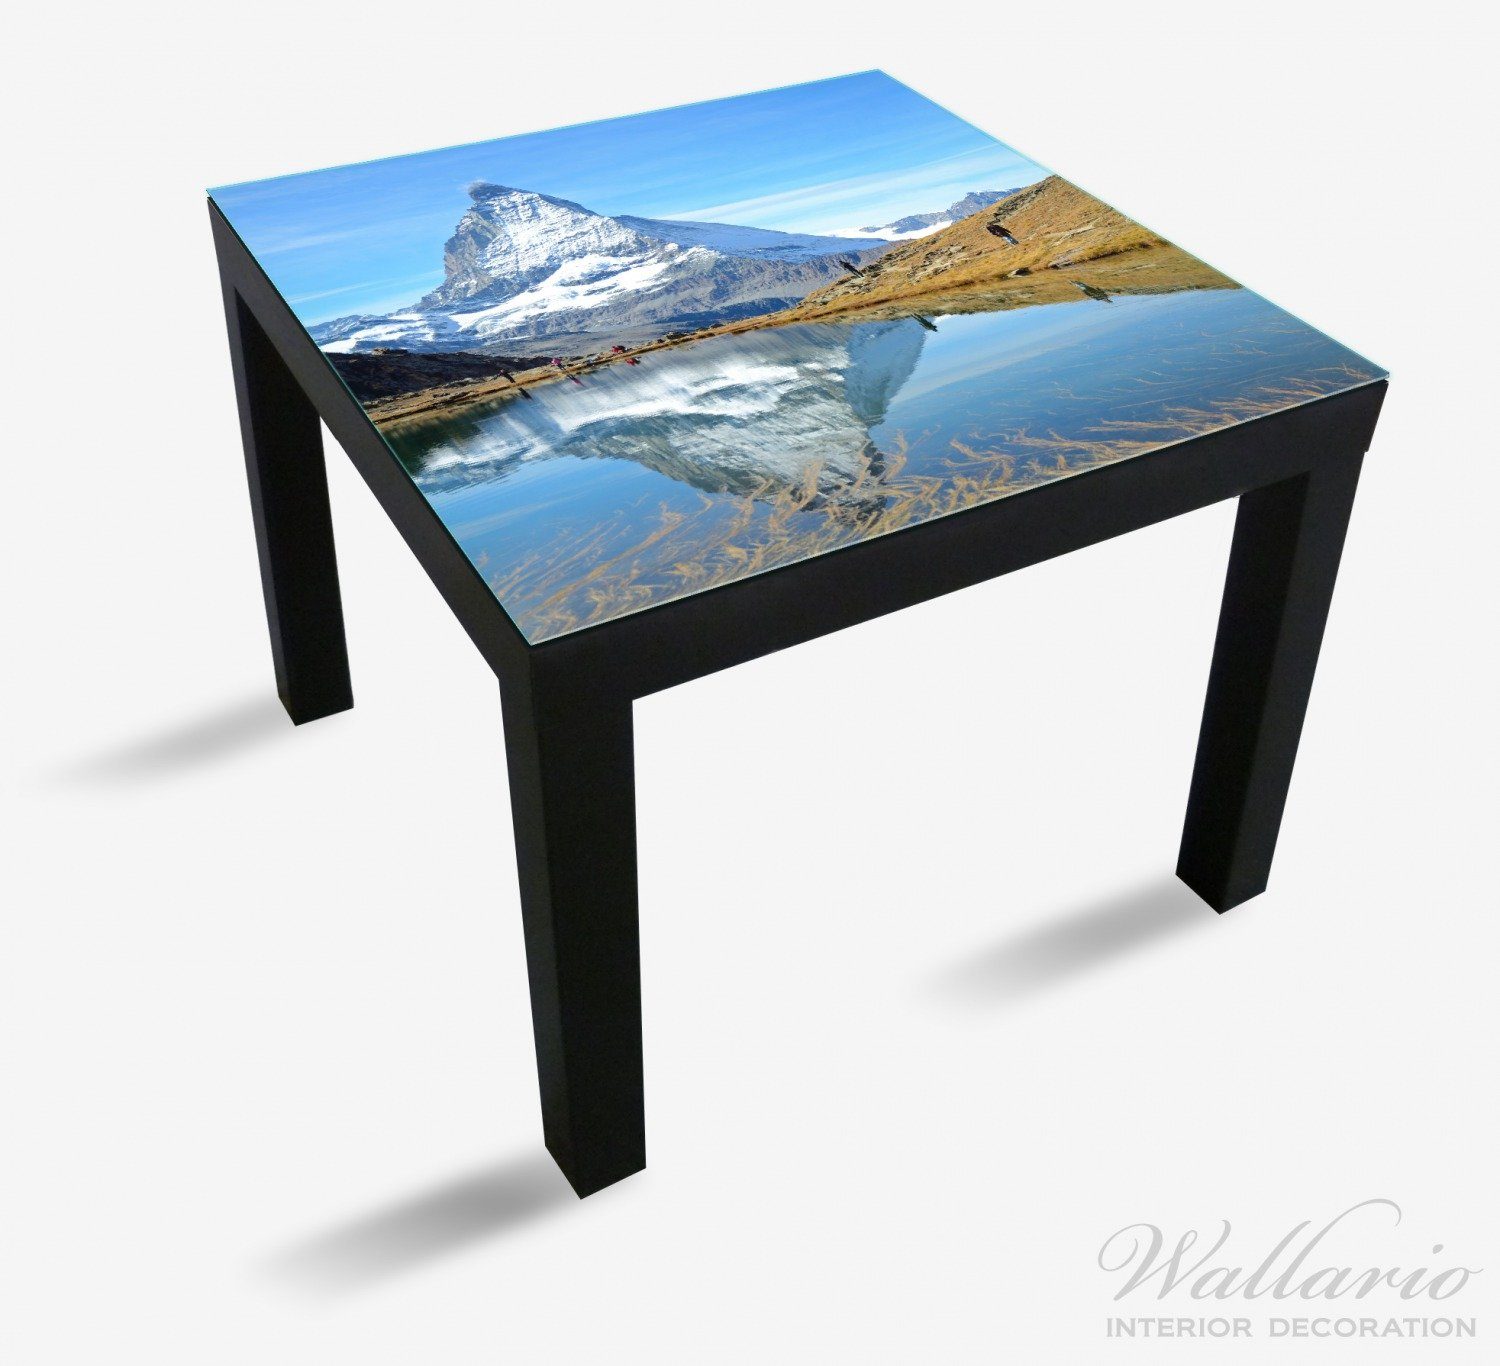 St), im Spiegelung - (1 Ikea Tisch geeignet für Lack Tischplatte See Wallario Matterhorn